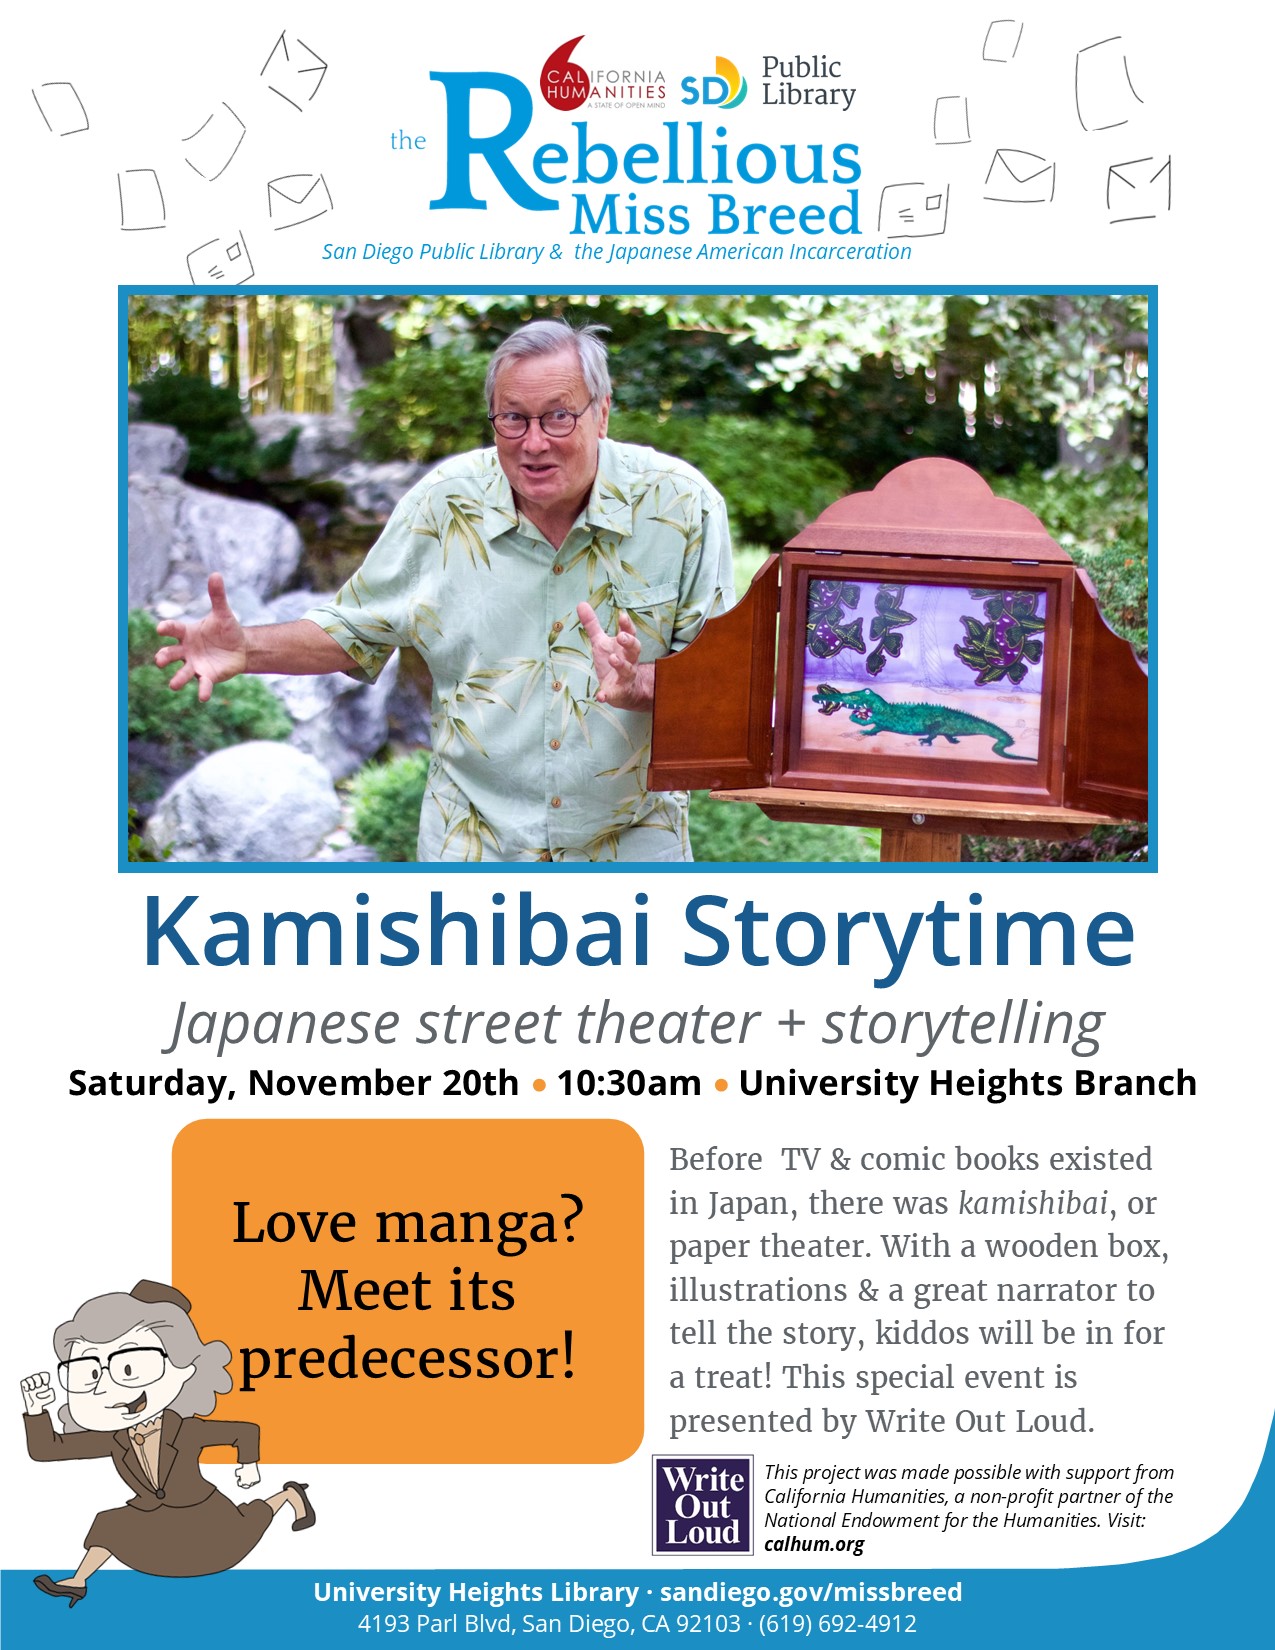 Kamishibai Theater & Storytelling